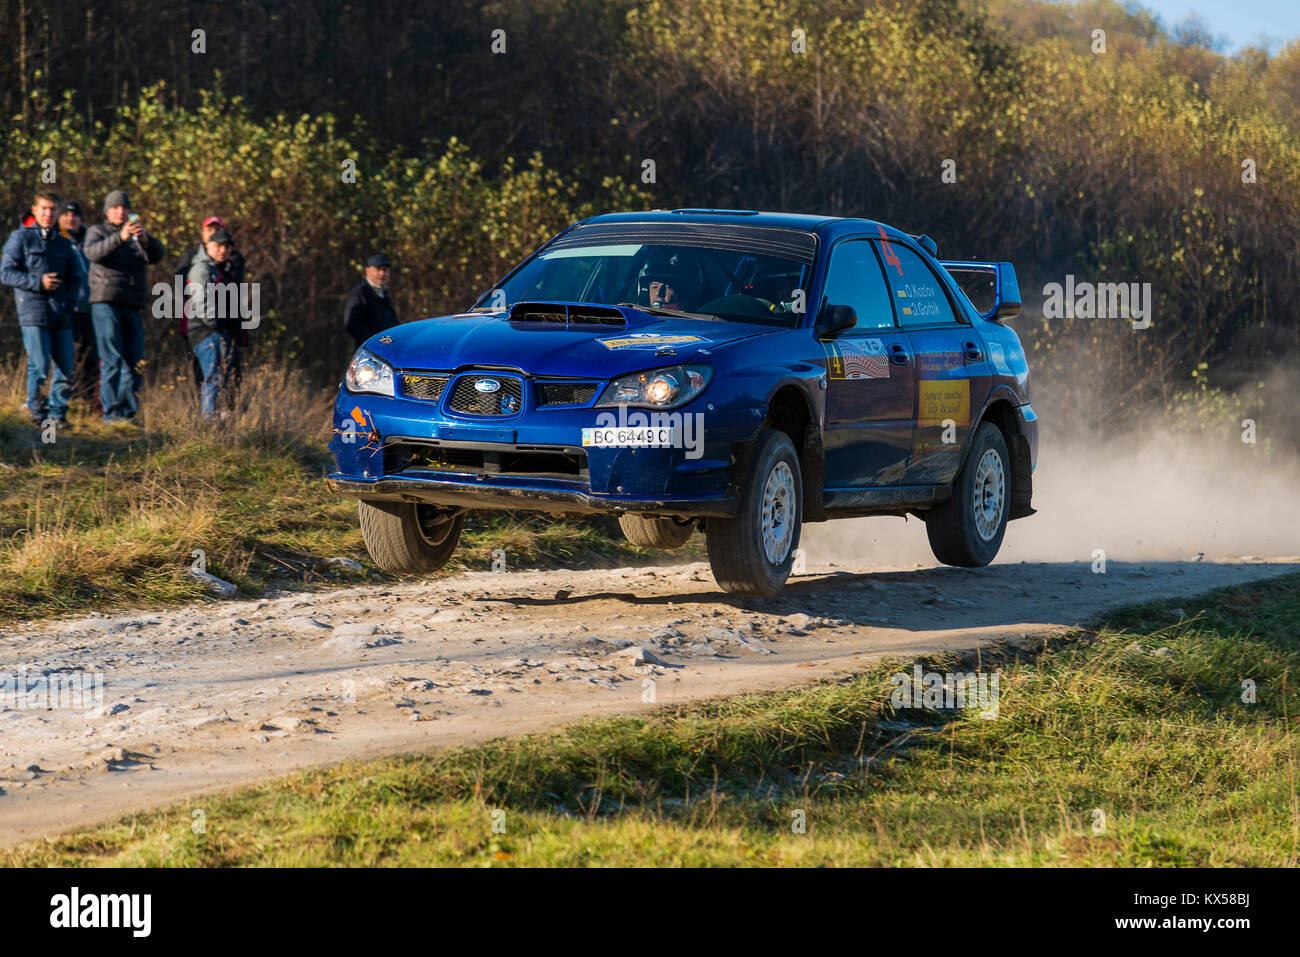 Lviv, Ucraina - 1 Novembre 2015: Alexander Kozlov la Subaru Impreza WRX STI compete al Rally annuale Galizia Foto Stock